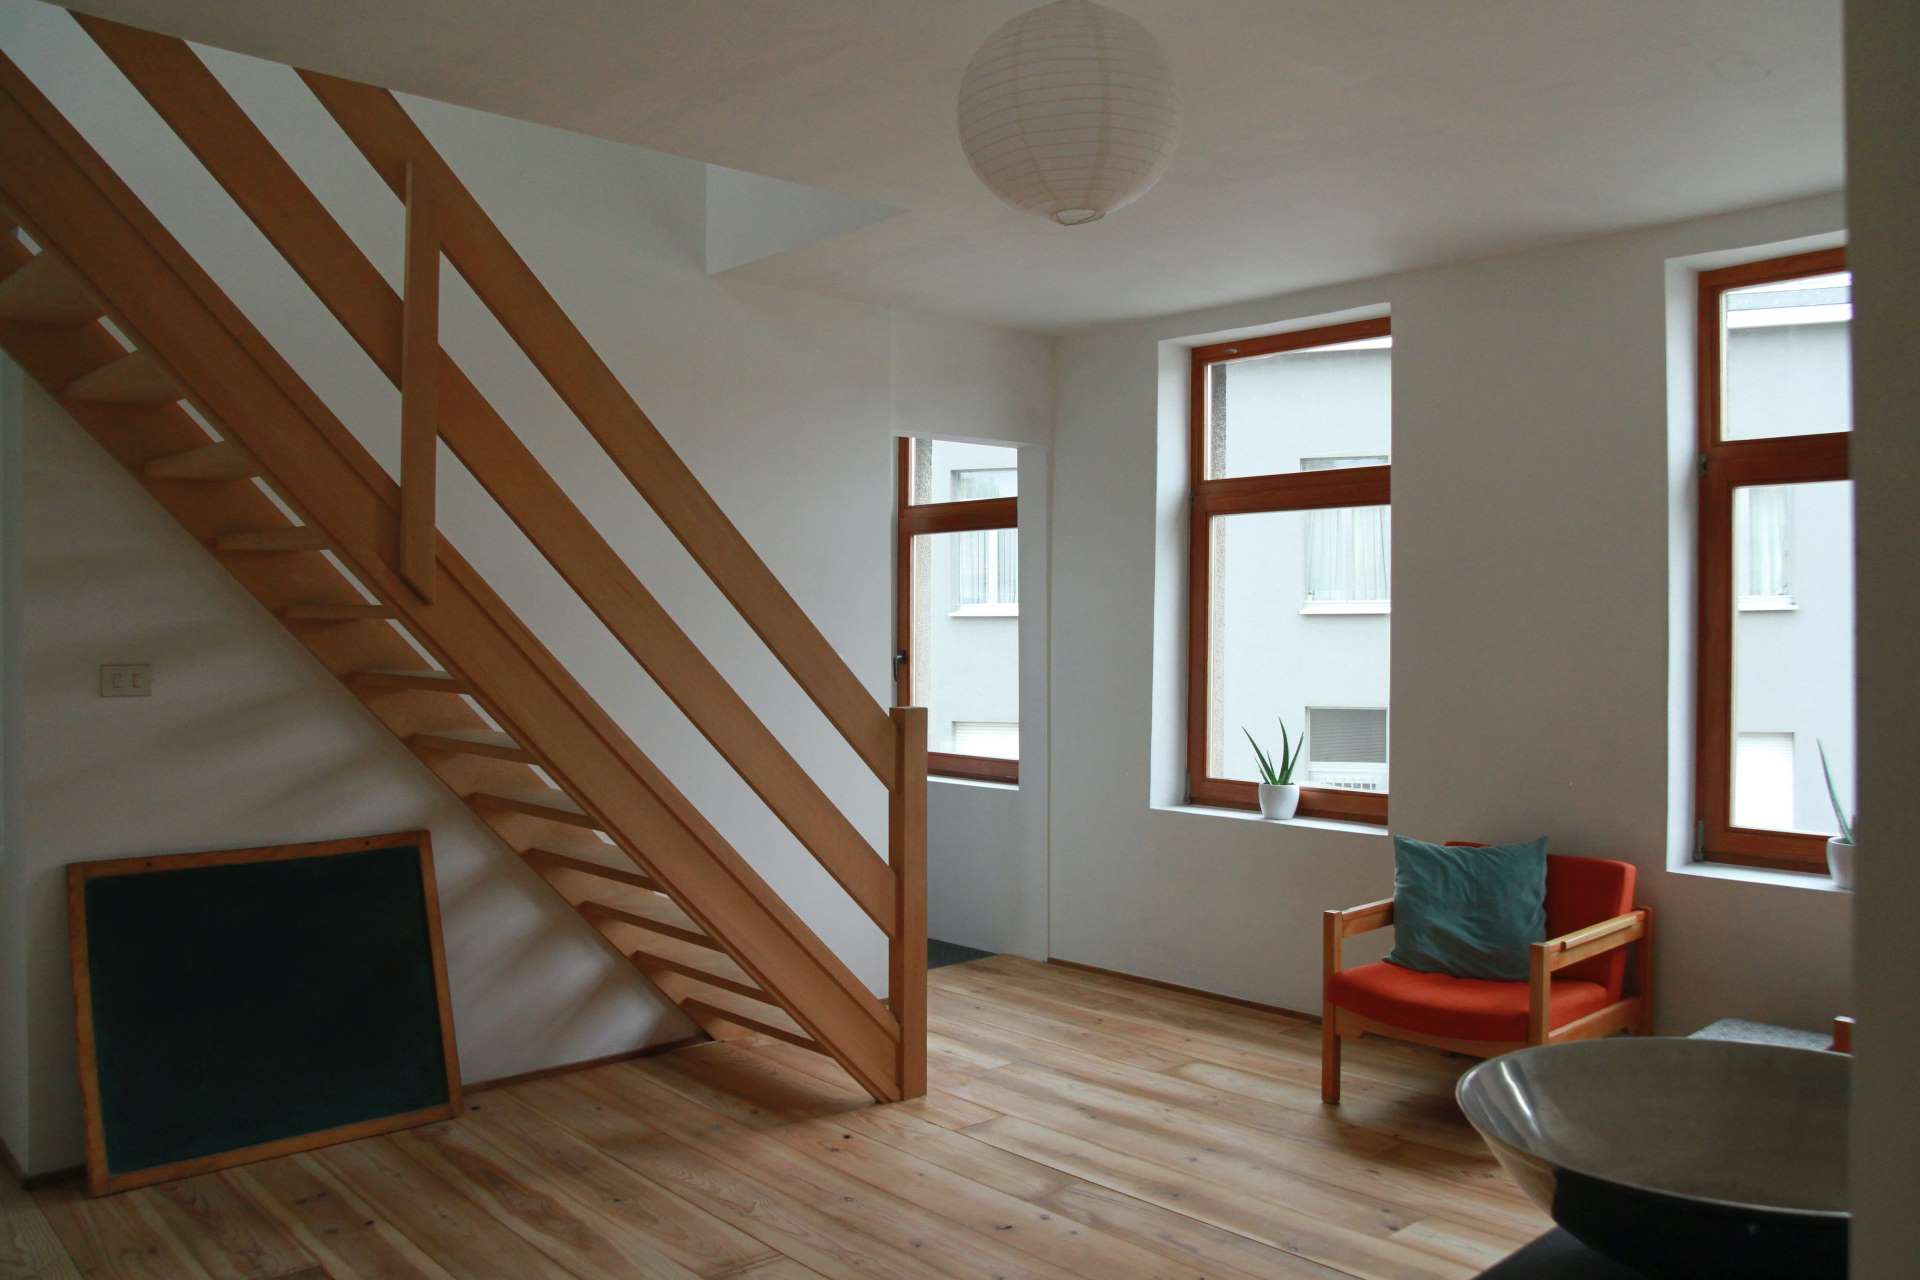 Ideais de Escadas, para aproveitar espaço ou acompanhar tendencias Foto: Fontanol